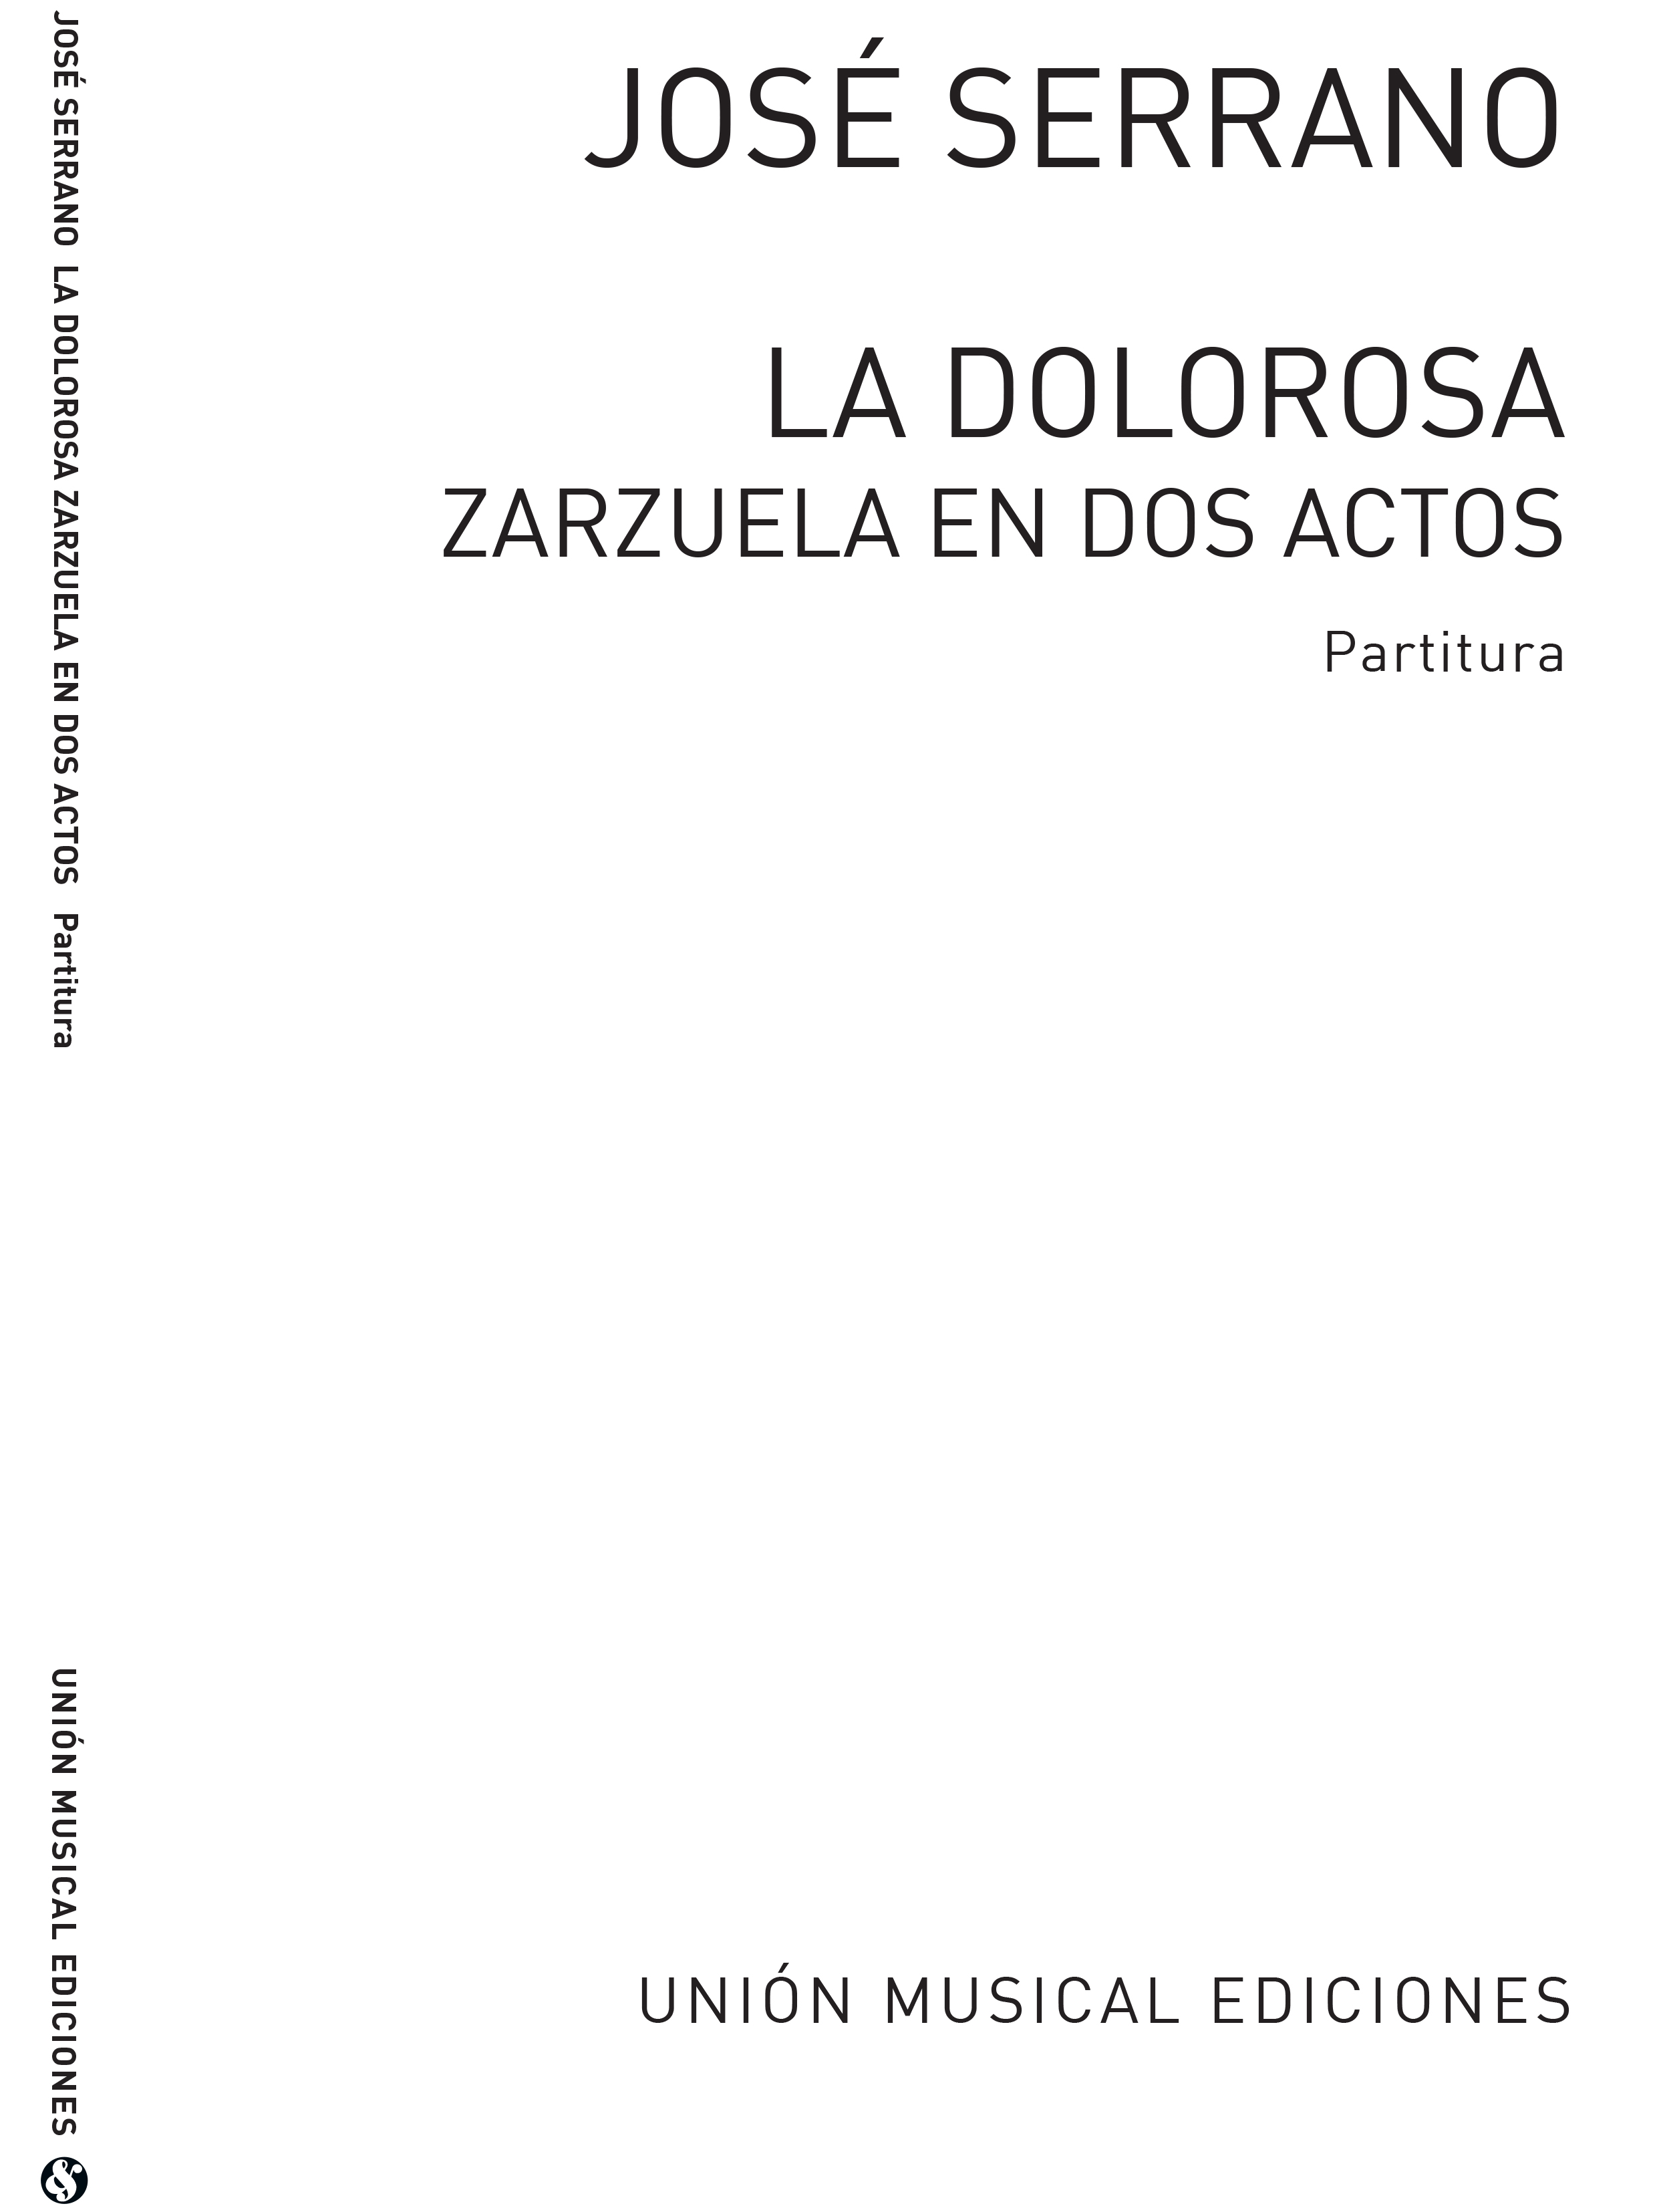 Jose Serrano: Jose Serrano: La Dolorosa Partitura Vocal Score: Opera: Vocal